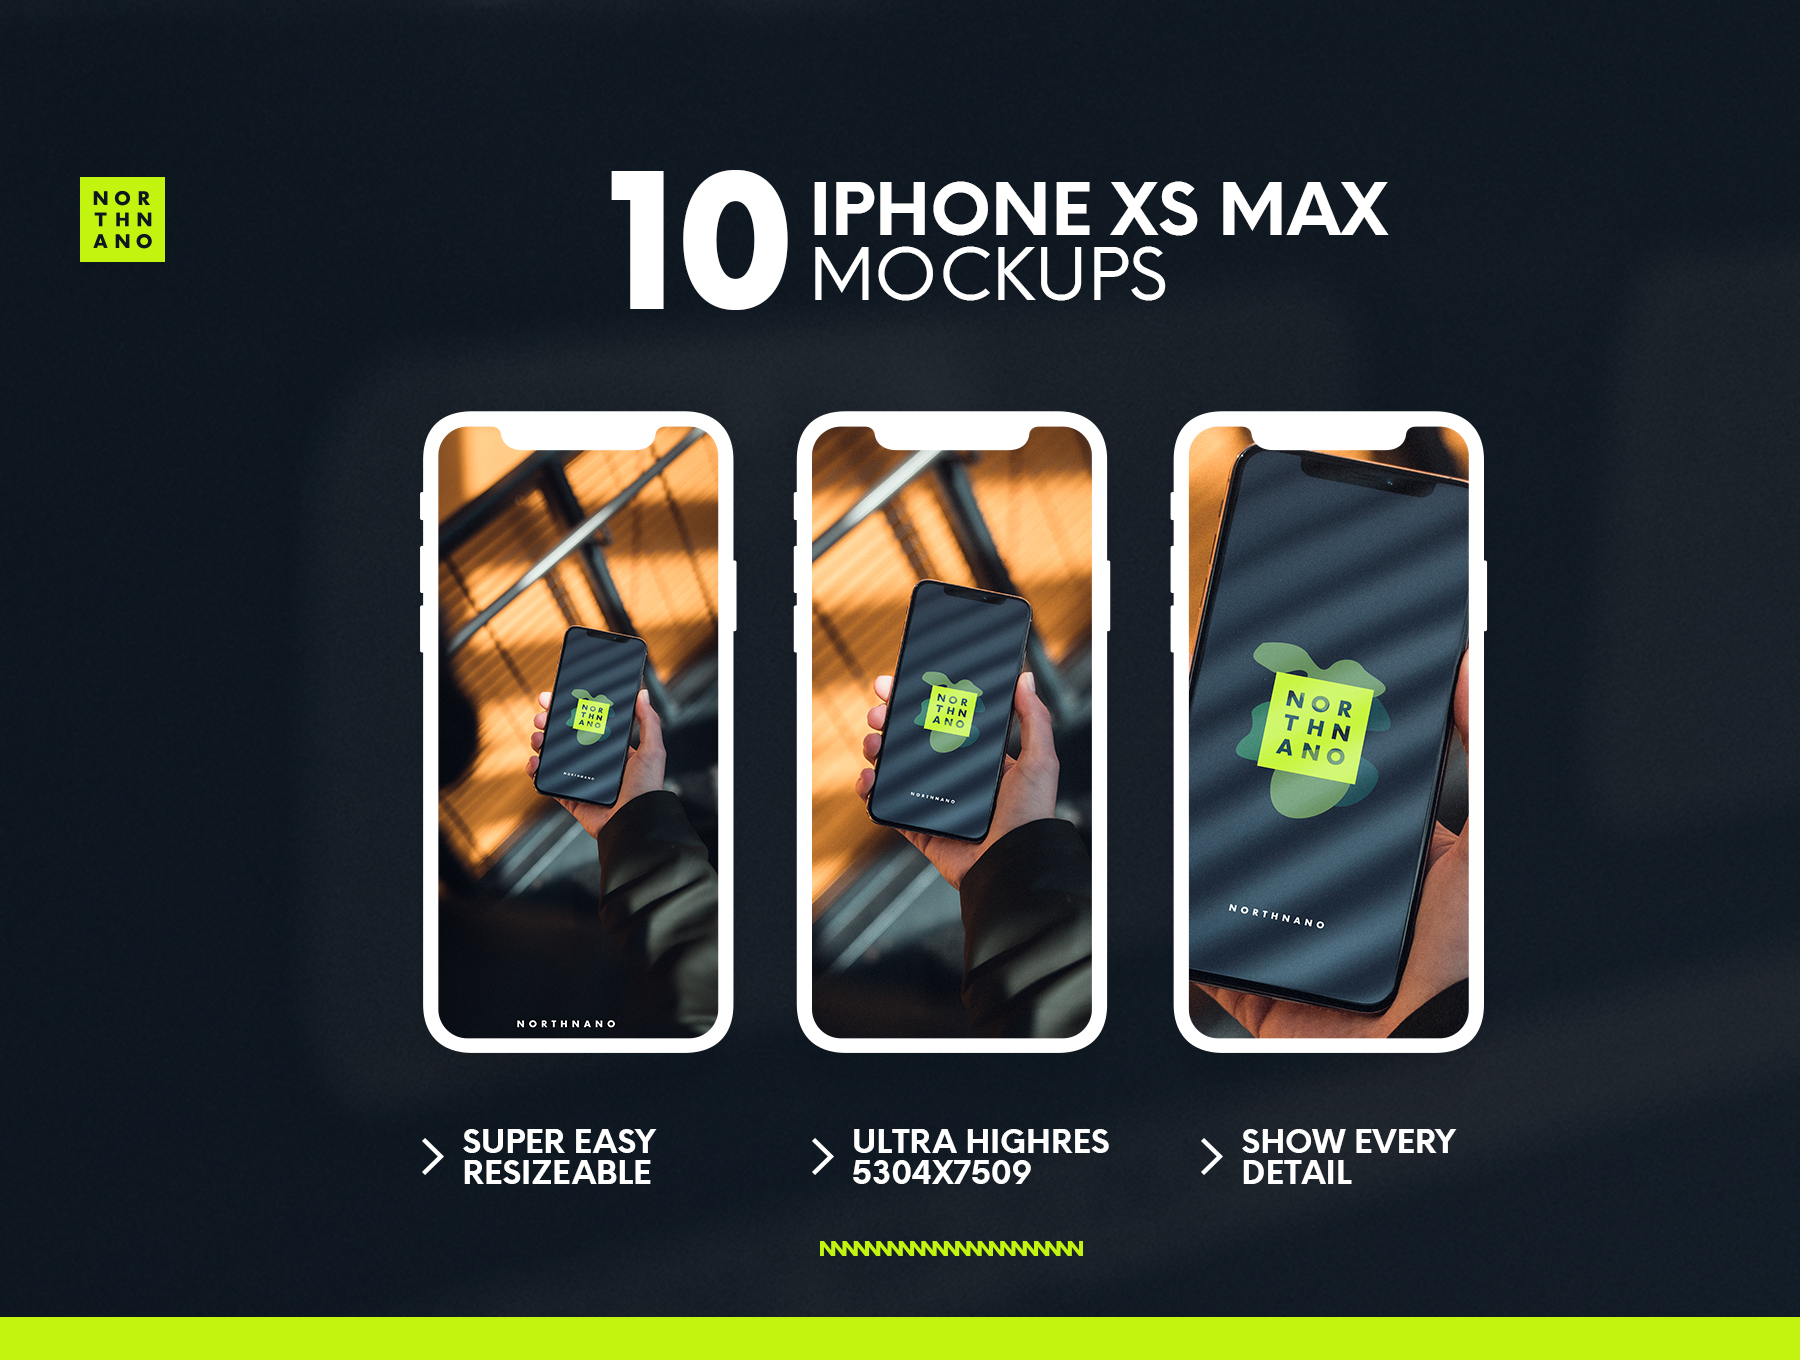 XS MAX实体模型 iPhone XS MAX Mocku